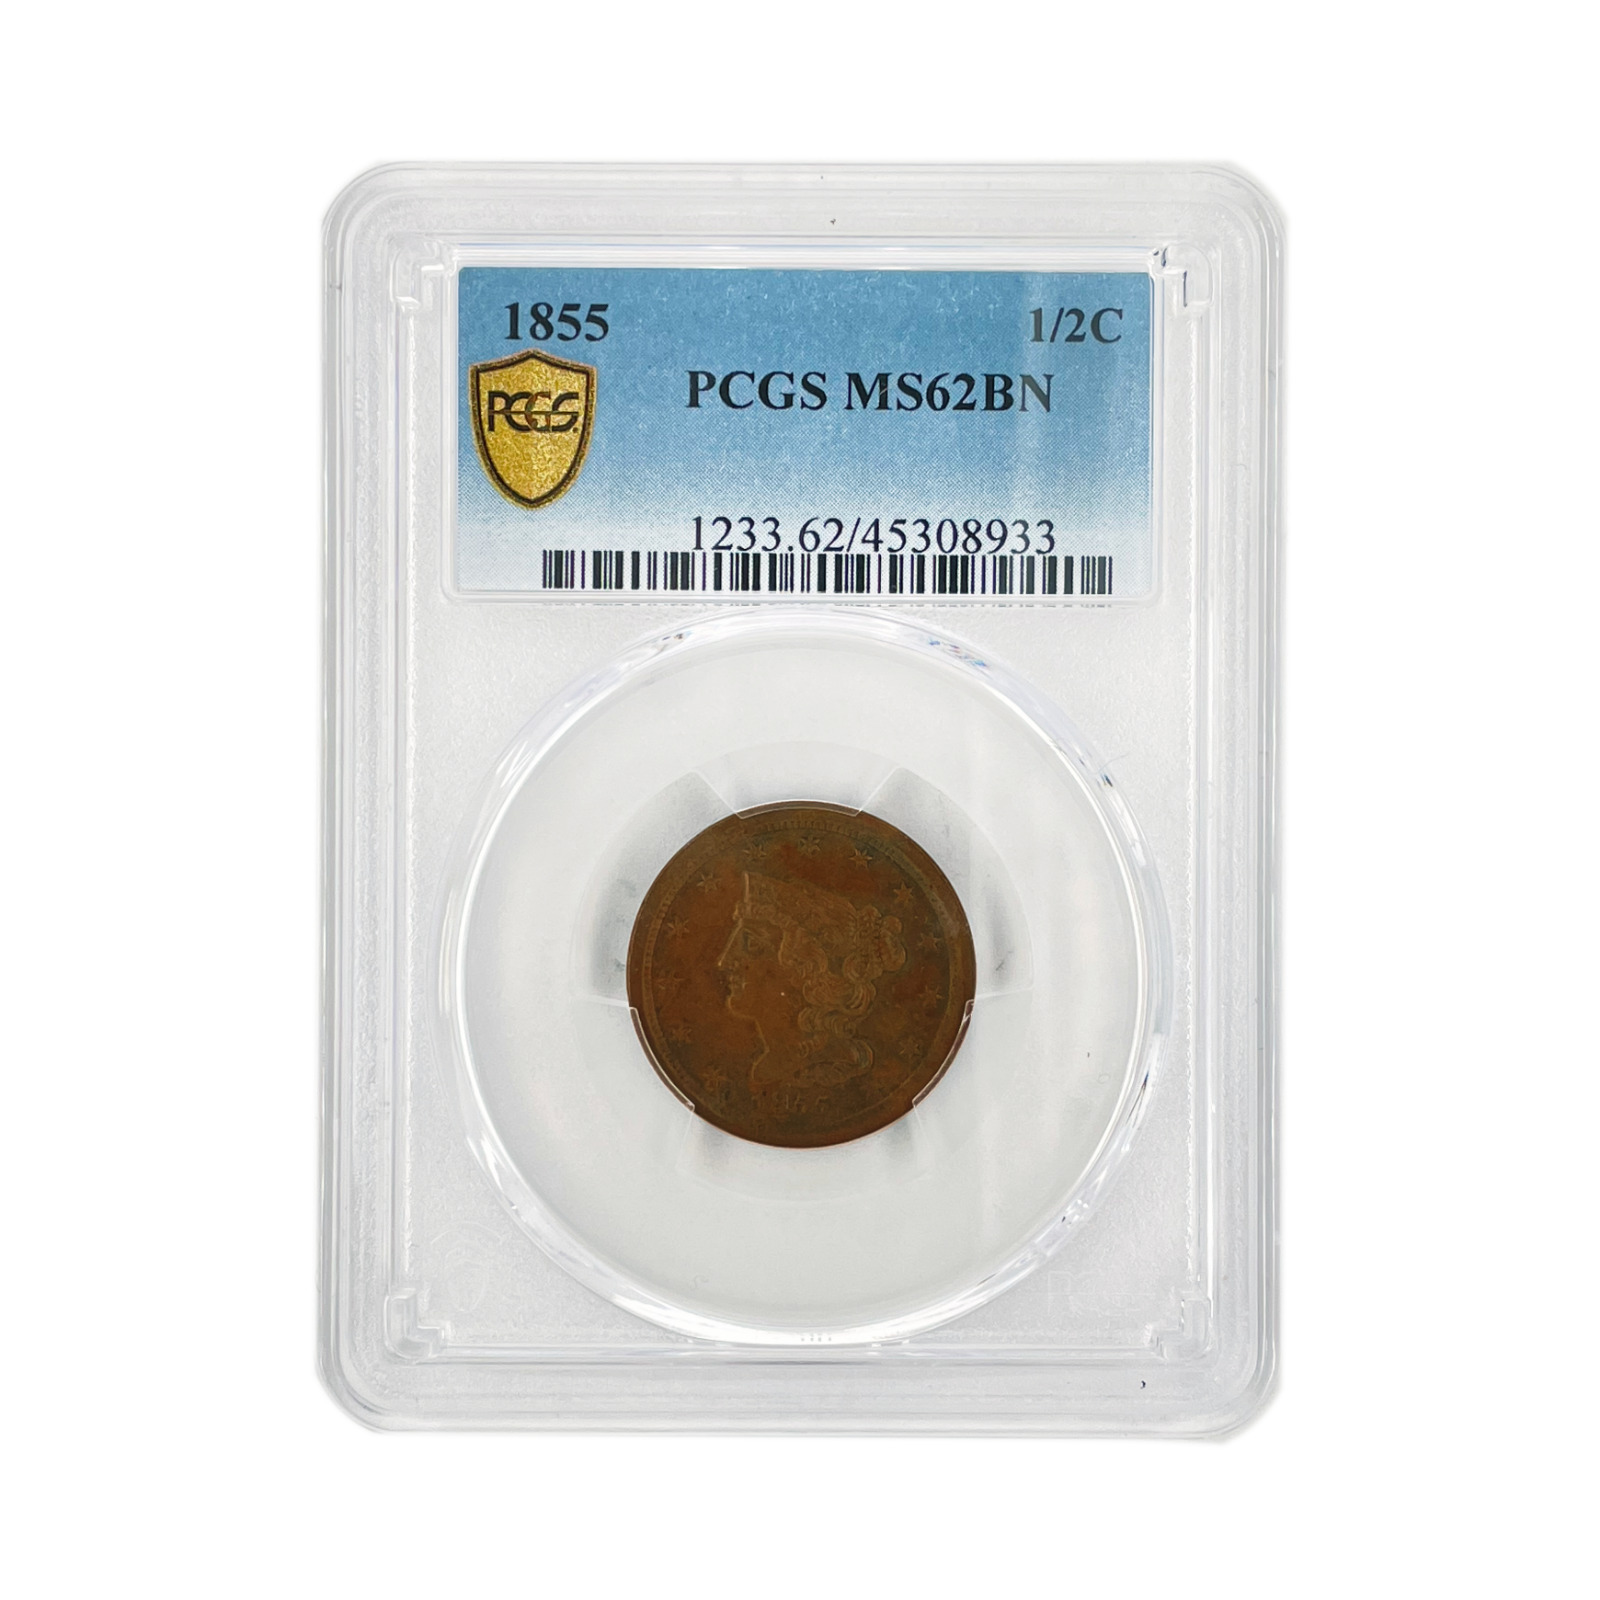 Pcgs Ms62bn 1855 1/2c Braided Hair - Half Cent Coin